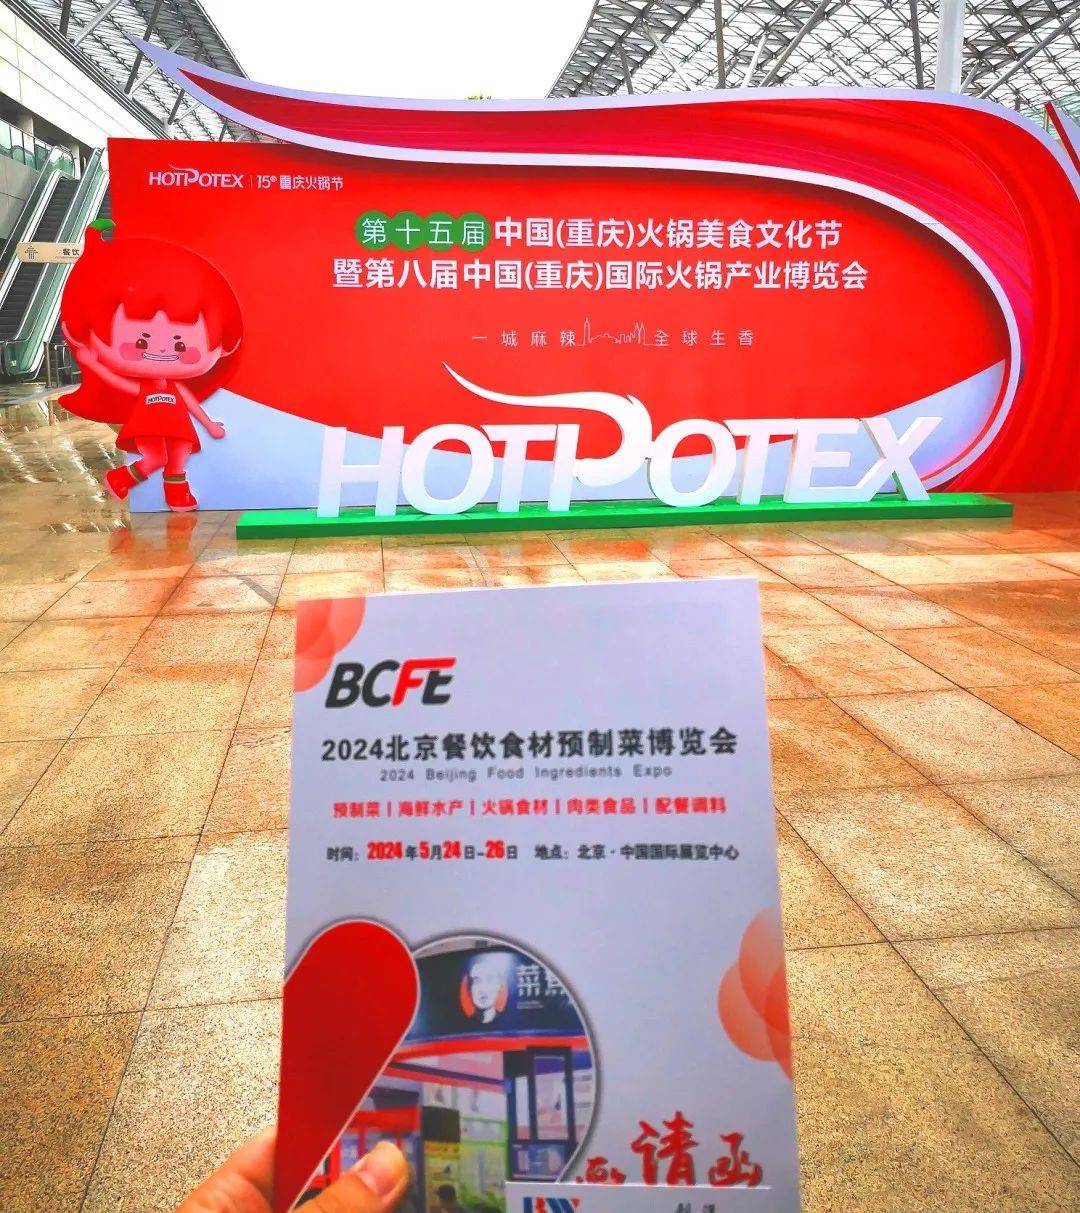 一路向前 | 2024 北京餐食会市场宣传火热进行中